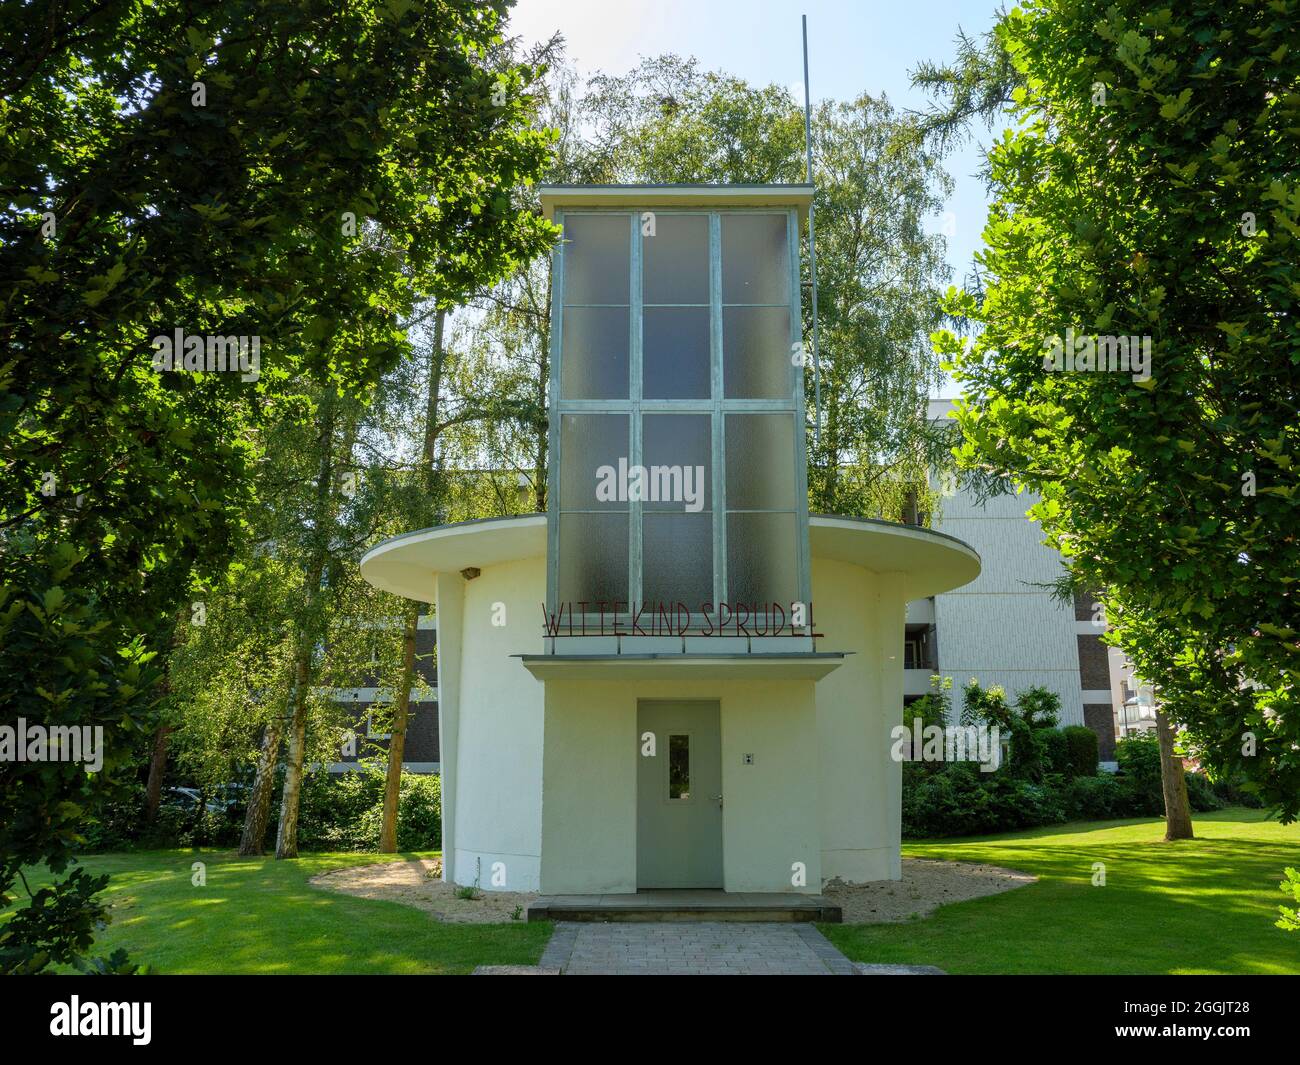 Wittekind Sprudel, Bauhaus architecture, Bad Rothenfelde, Osnabrücker Land, Lower Saxony, Germany Stock Photo